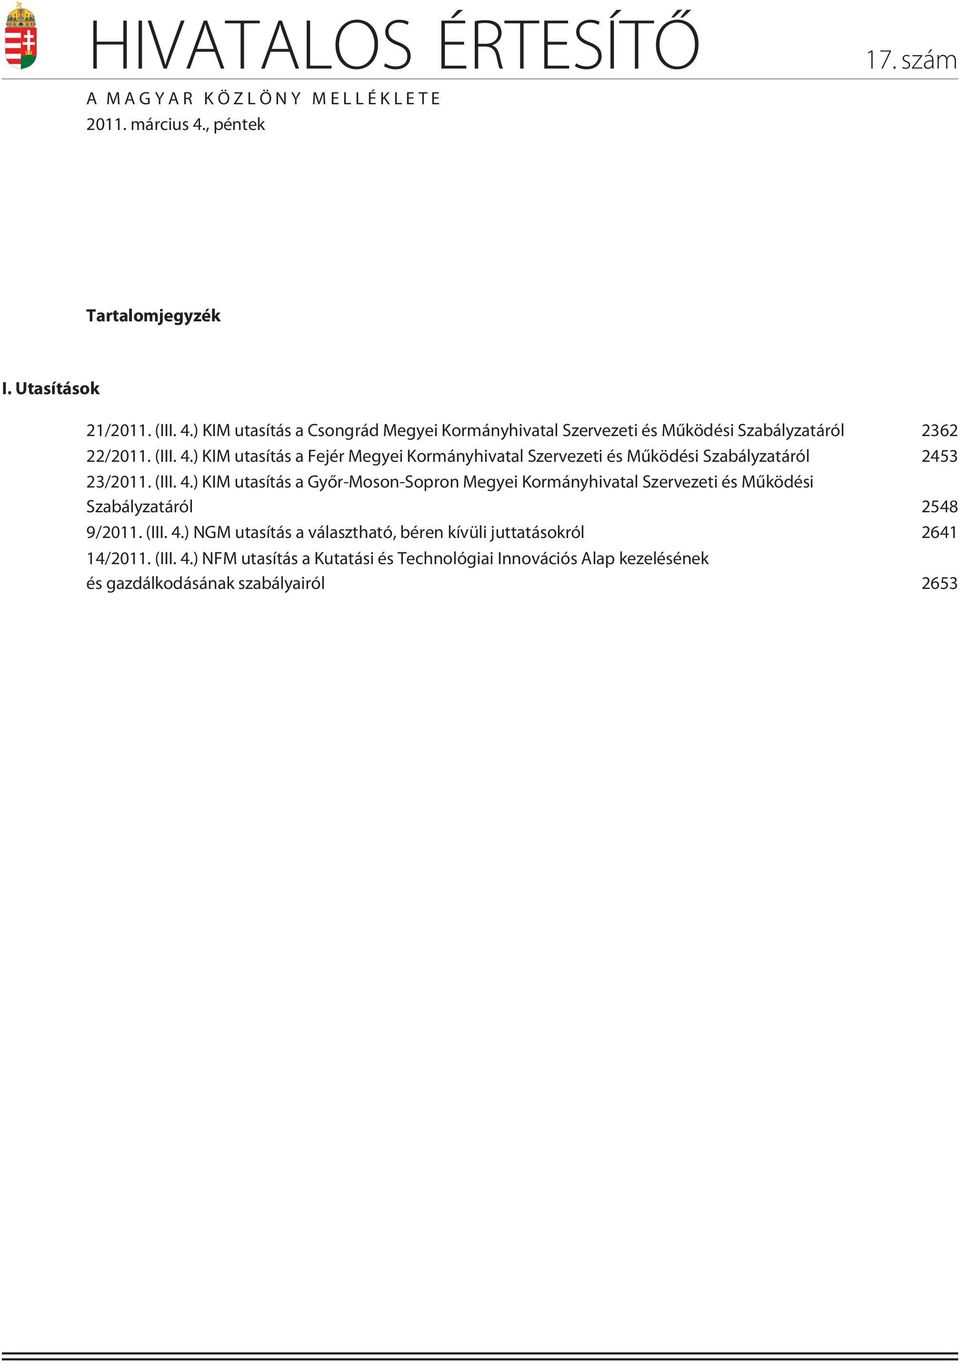 (III. 4.) KIM utasítás a Fejér Megyei Kormányhivatal Szervezeti és Mûködési Szabályzatáról 2453 23/2011. (III. 4.) KIM utasítás a Gyõr-Moson-Sopron Megyei Kormányhivatal Szervezeti és Mûködési Szabályzatáról 2548 9/2011.